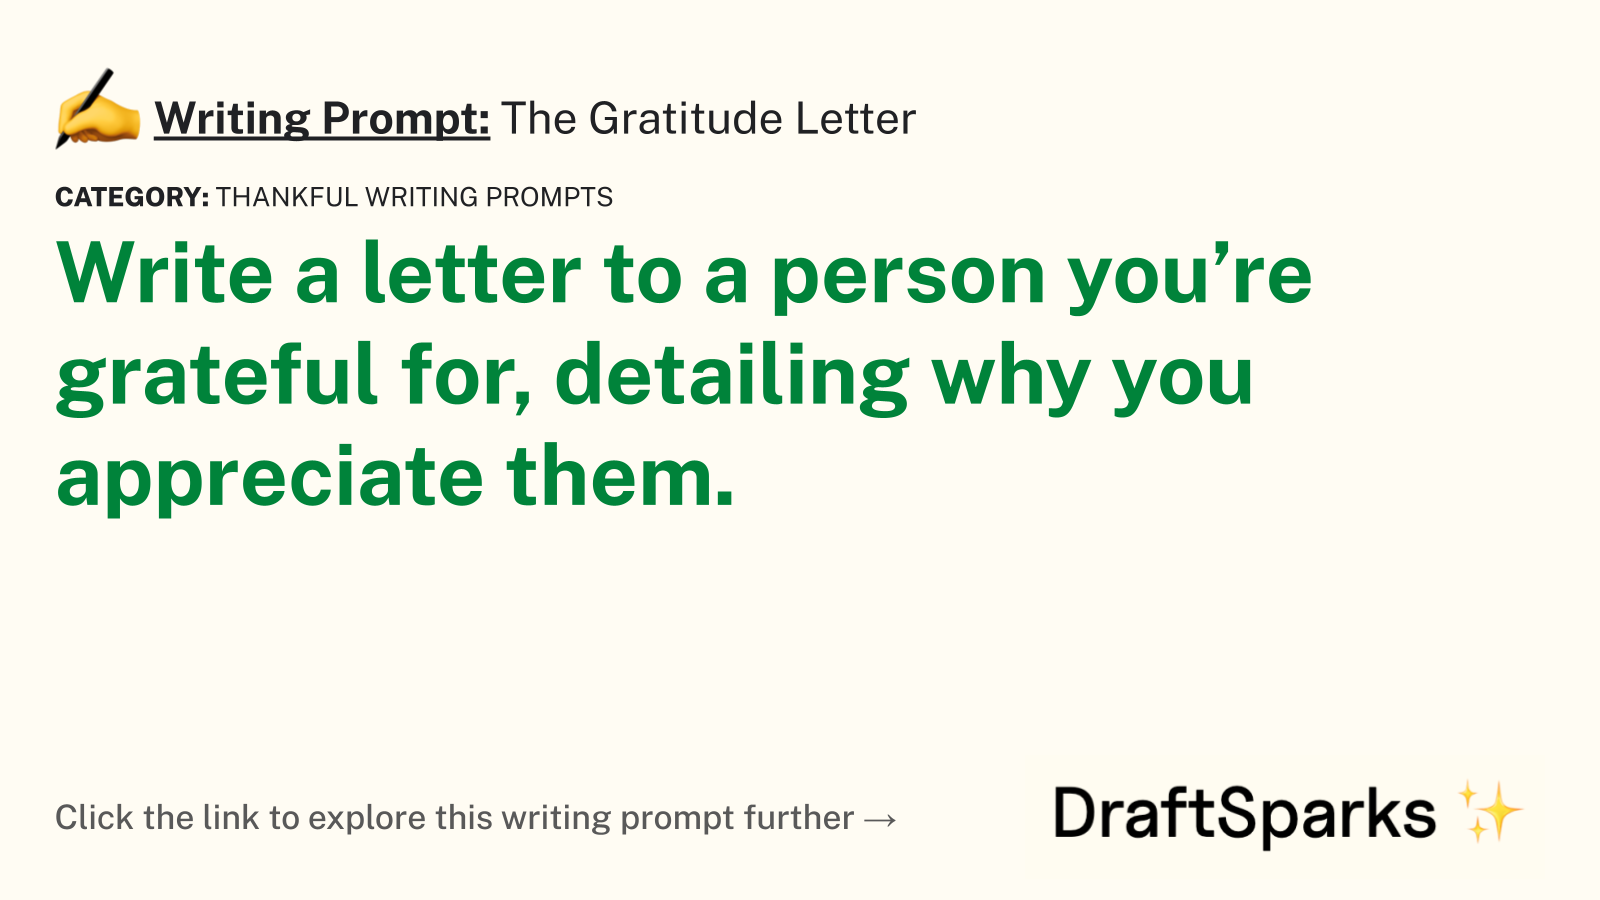 The Gratitude Letter